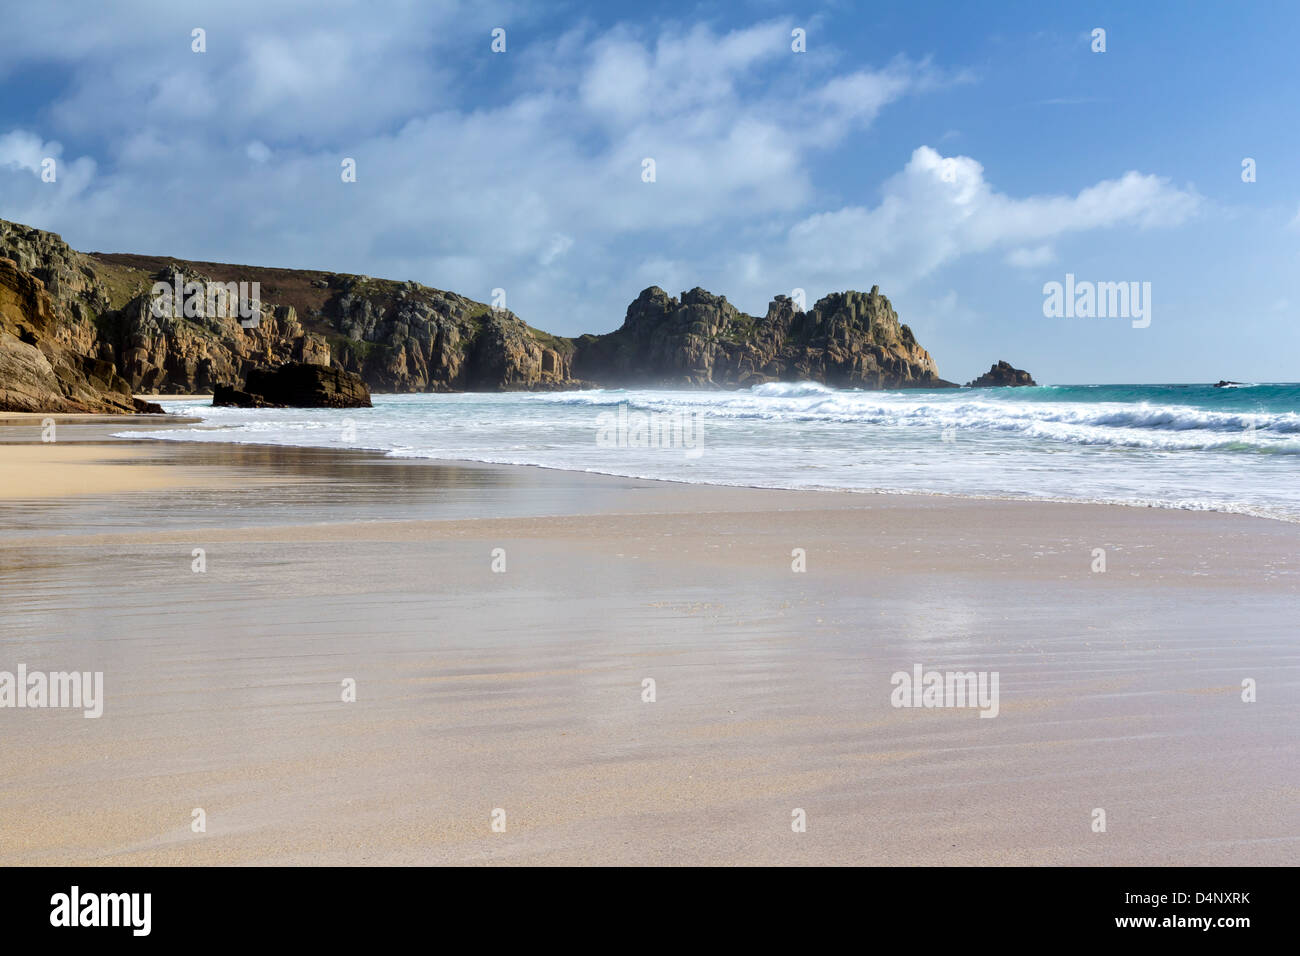 La splendida spiaggia di sabbia dorata a Porthcurno Cornwall Inghilterra REGNO UNITO Foto Stock